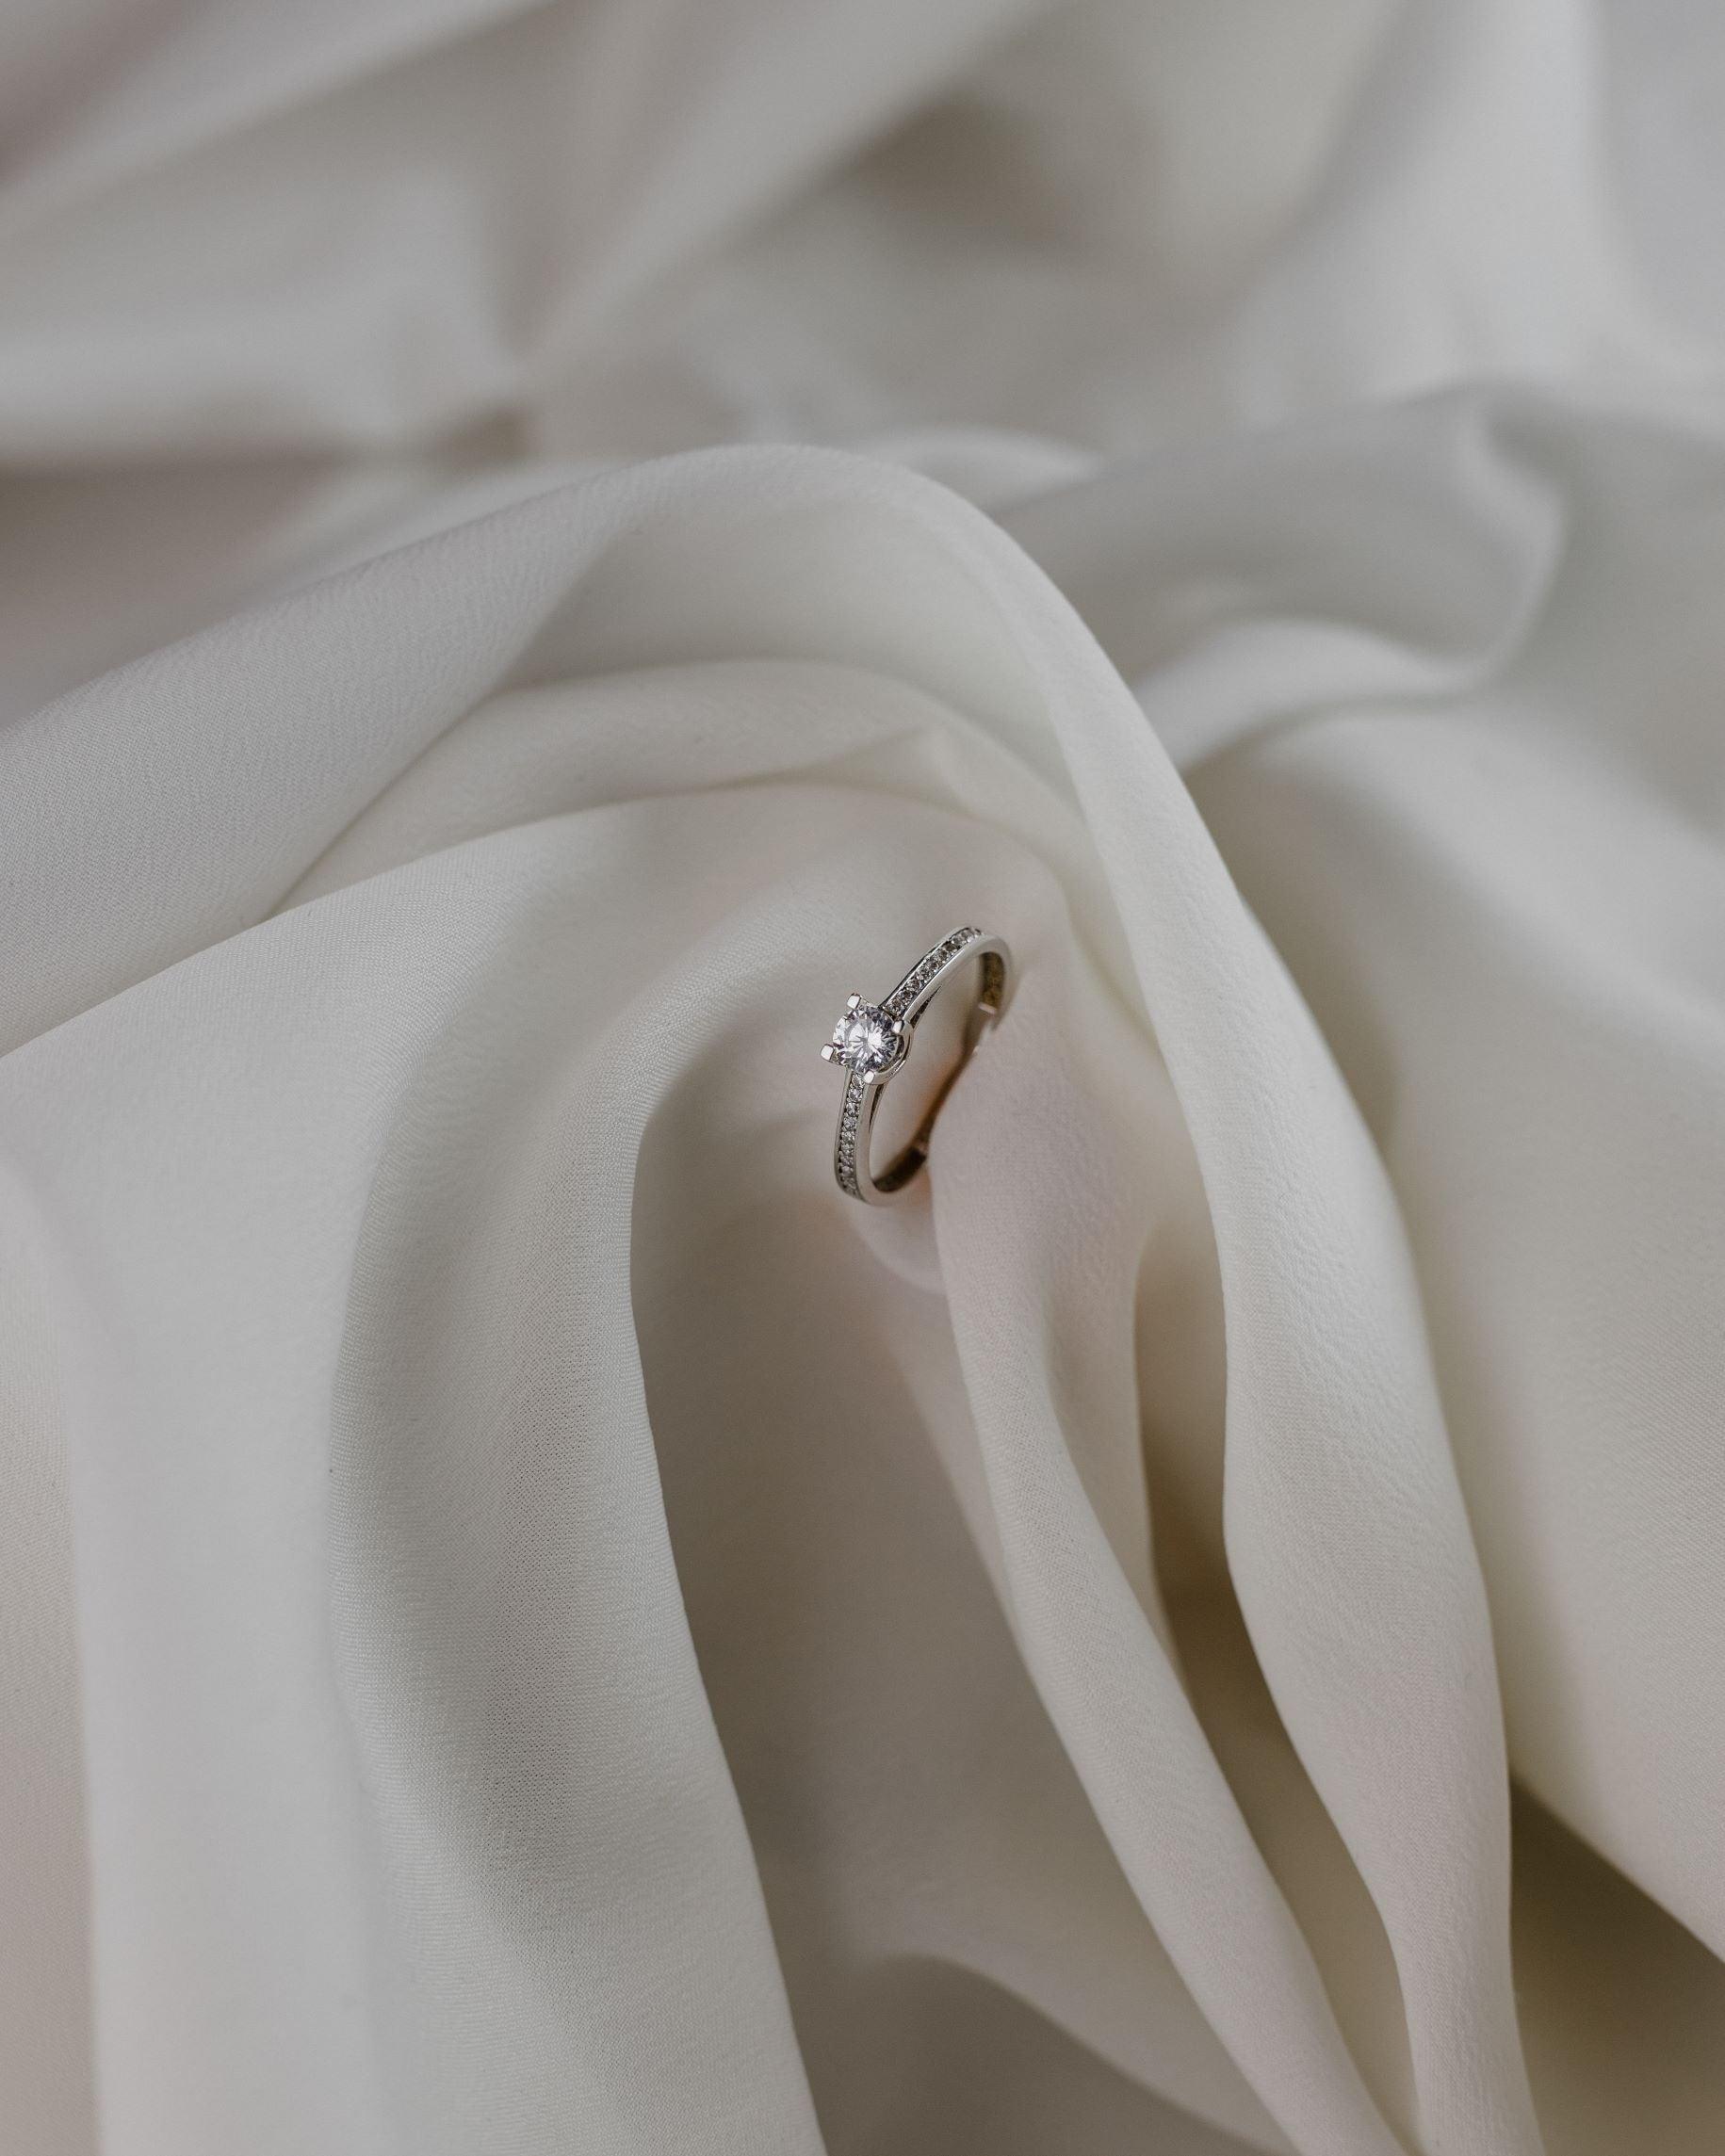 Λευκόχρυσο μονόπετρο με διαμάντι, καστόνι σε σχήμα "V" και πλαϊνές πέτρες, επάνω σε λευκό ύφασμα. 